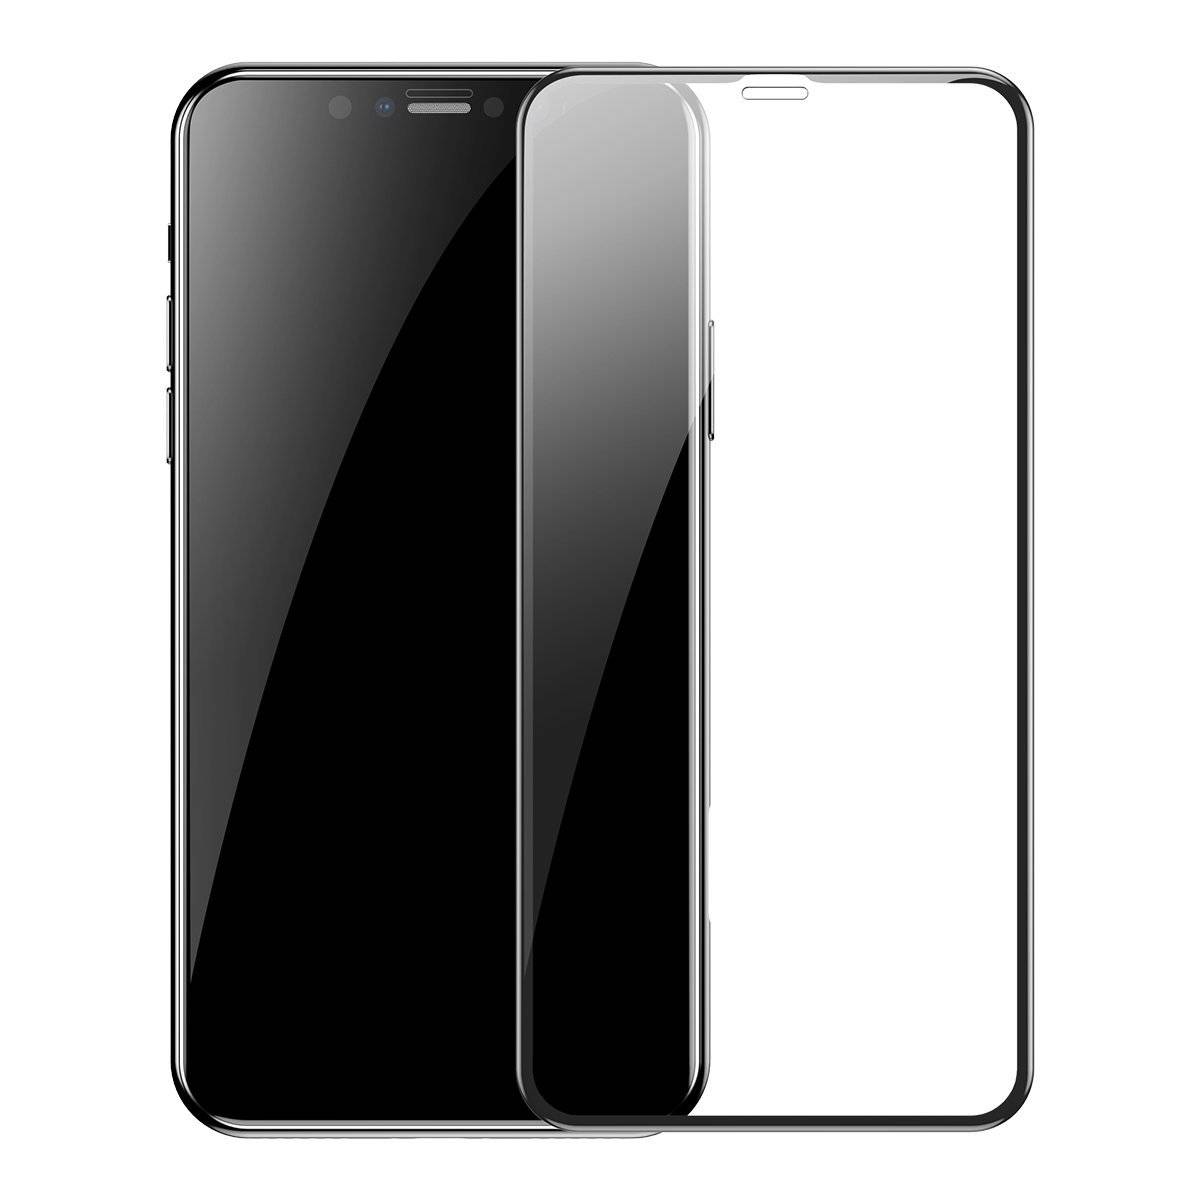 Set 2 folii de sticla pentru protectie ecran, Apple iPhone XR / 11, Baseus Tempered Glass, 6.1 inch imagine